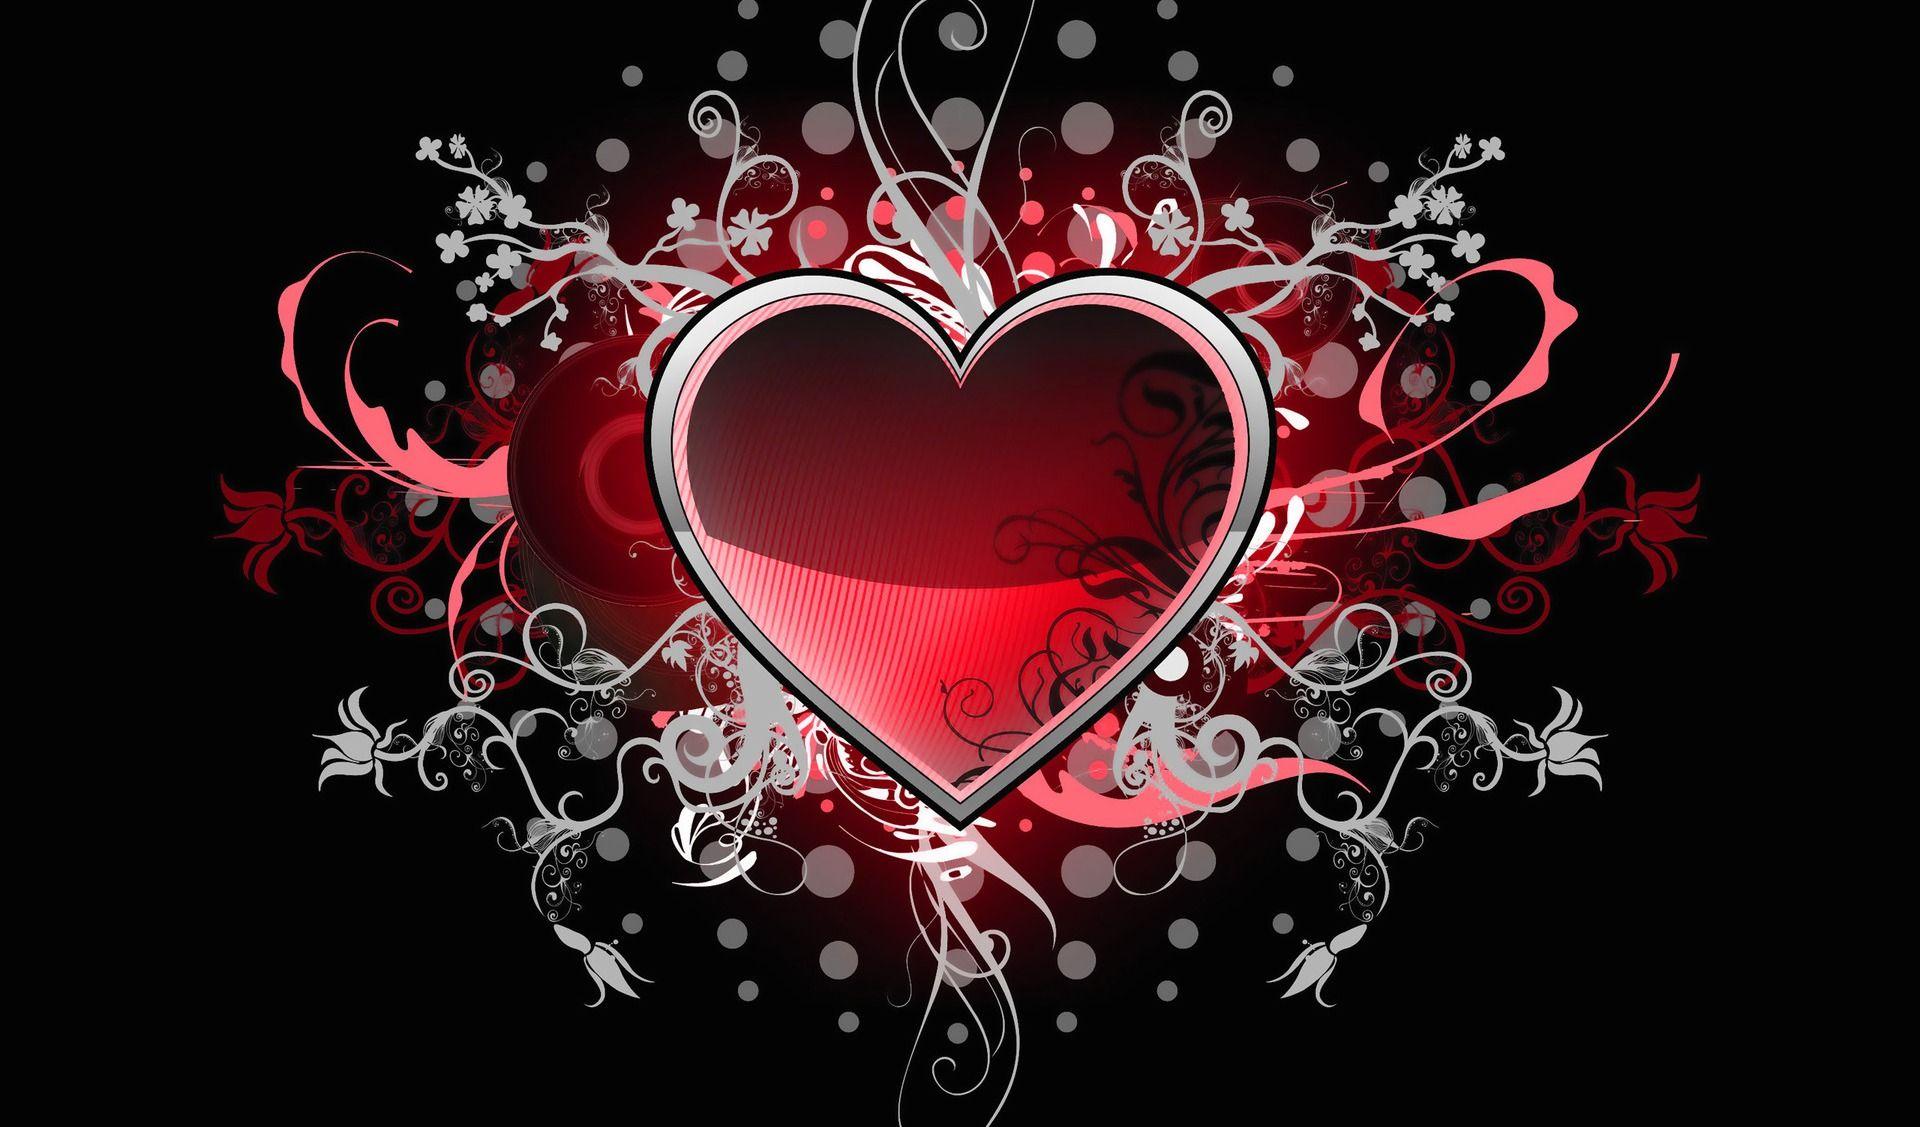 Valentines Desktop Wallpaper Images  Free Download on Freepik